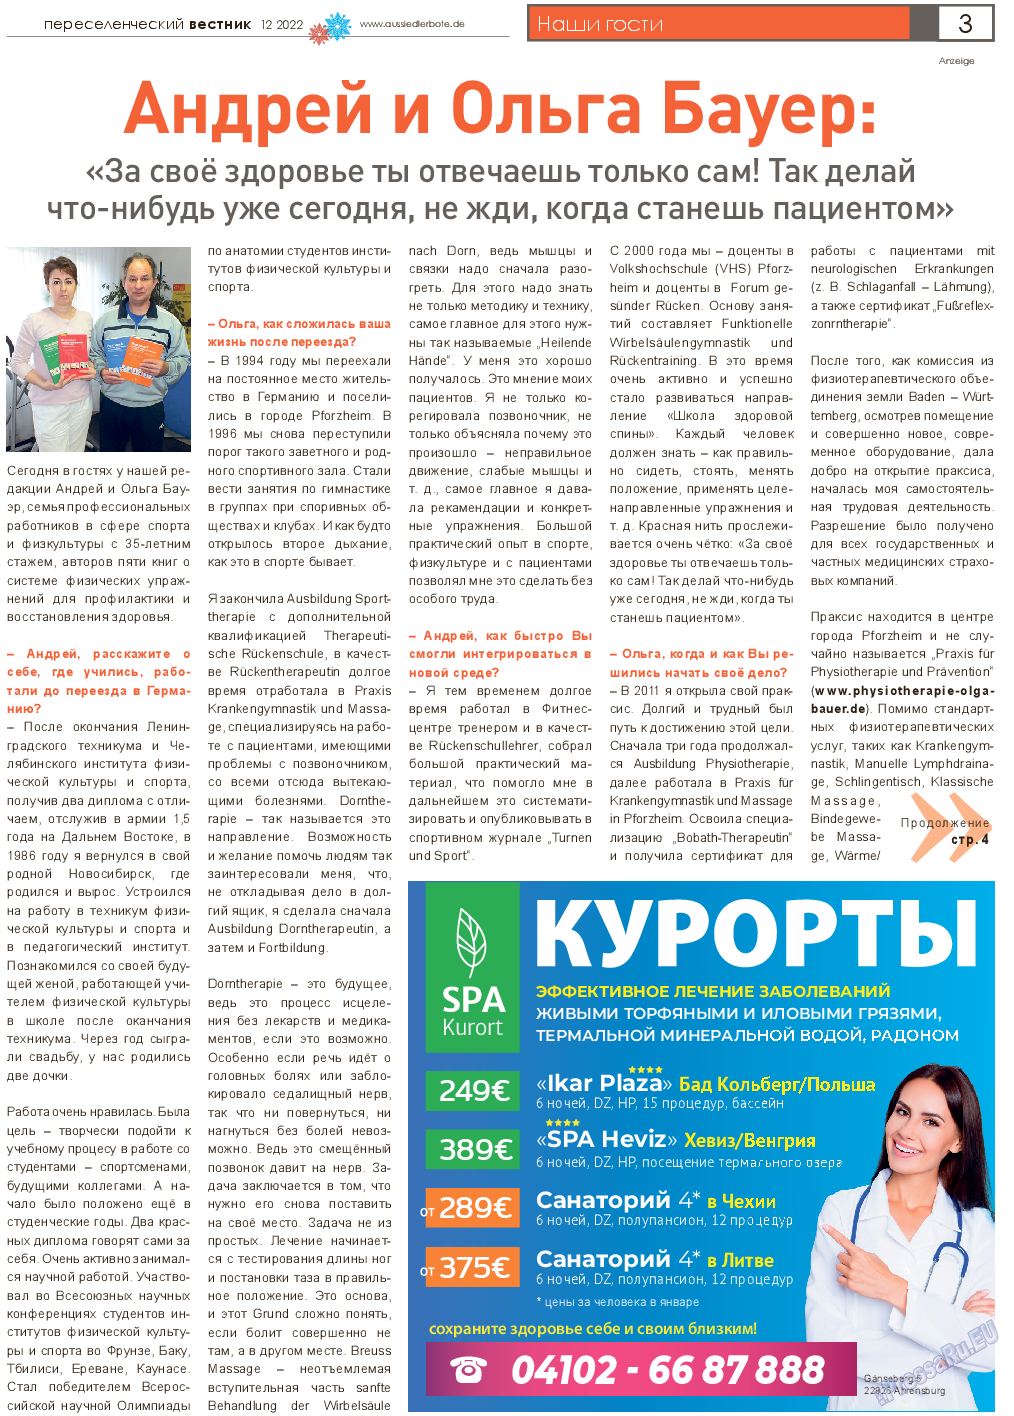 Переселенческий вестник, газета. 2022 №12 стр.3